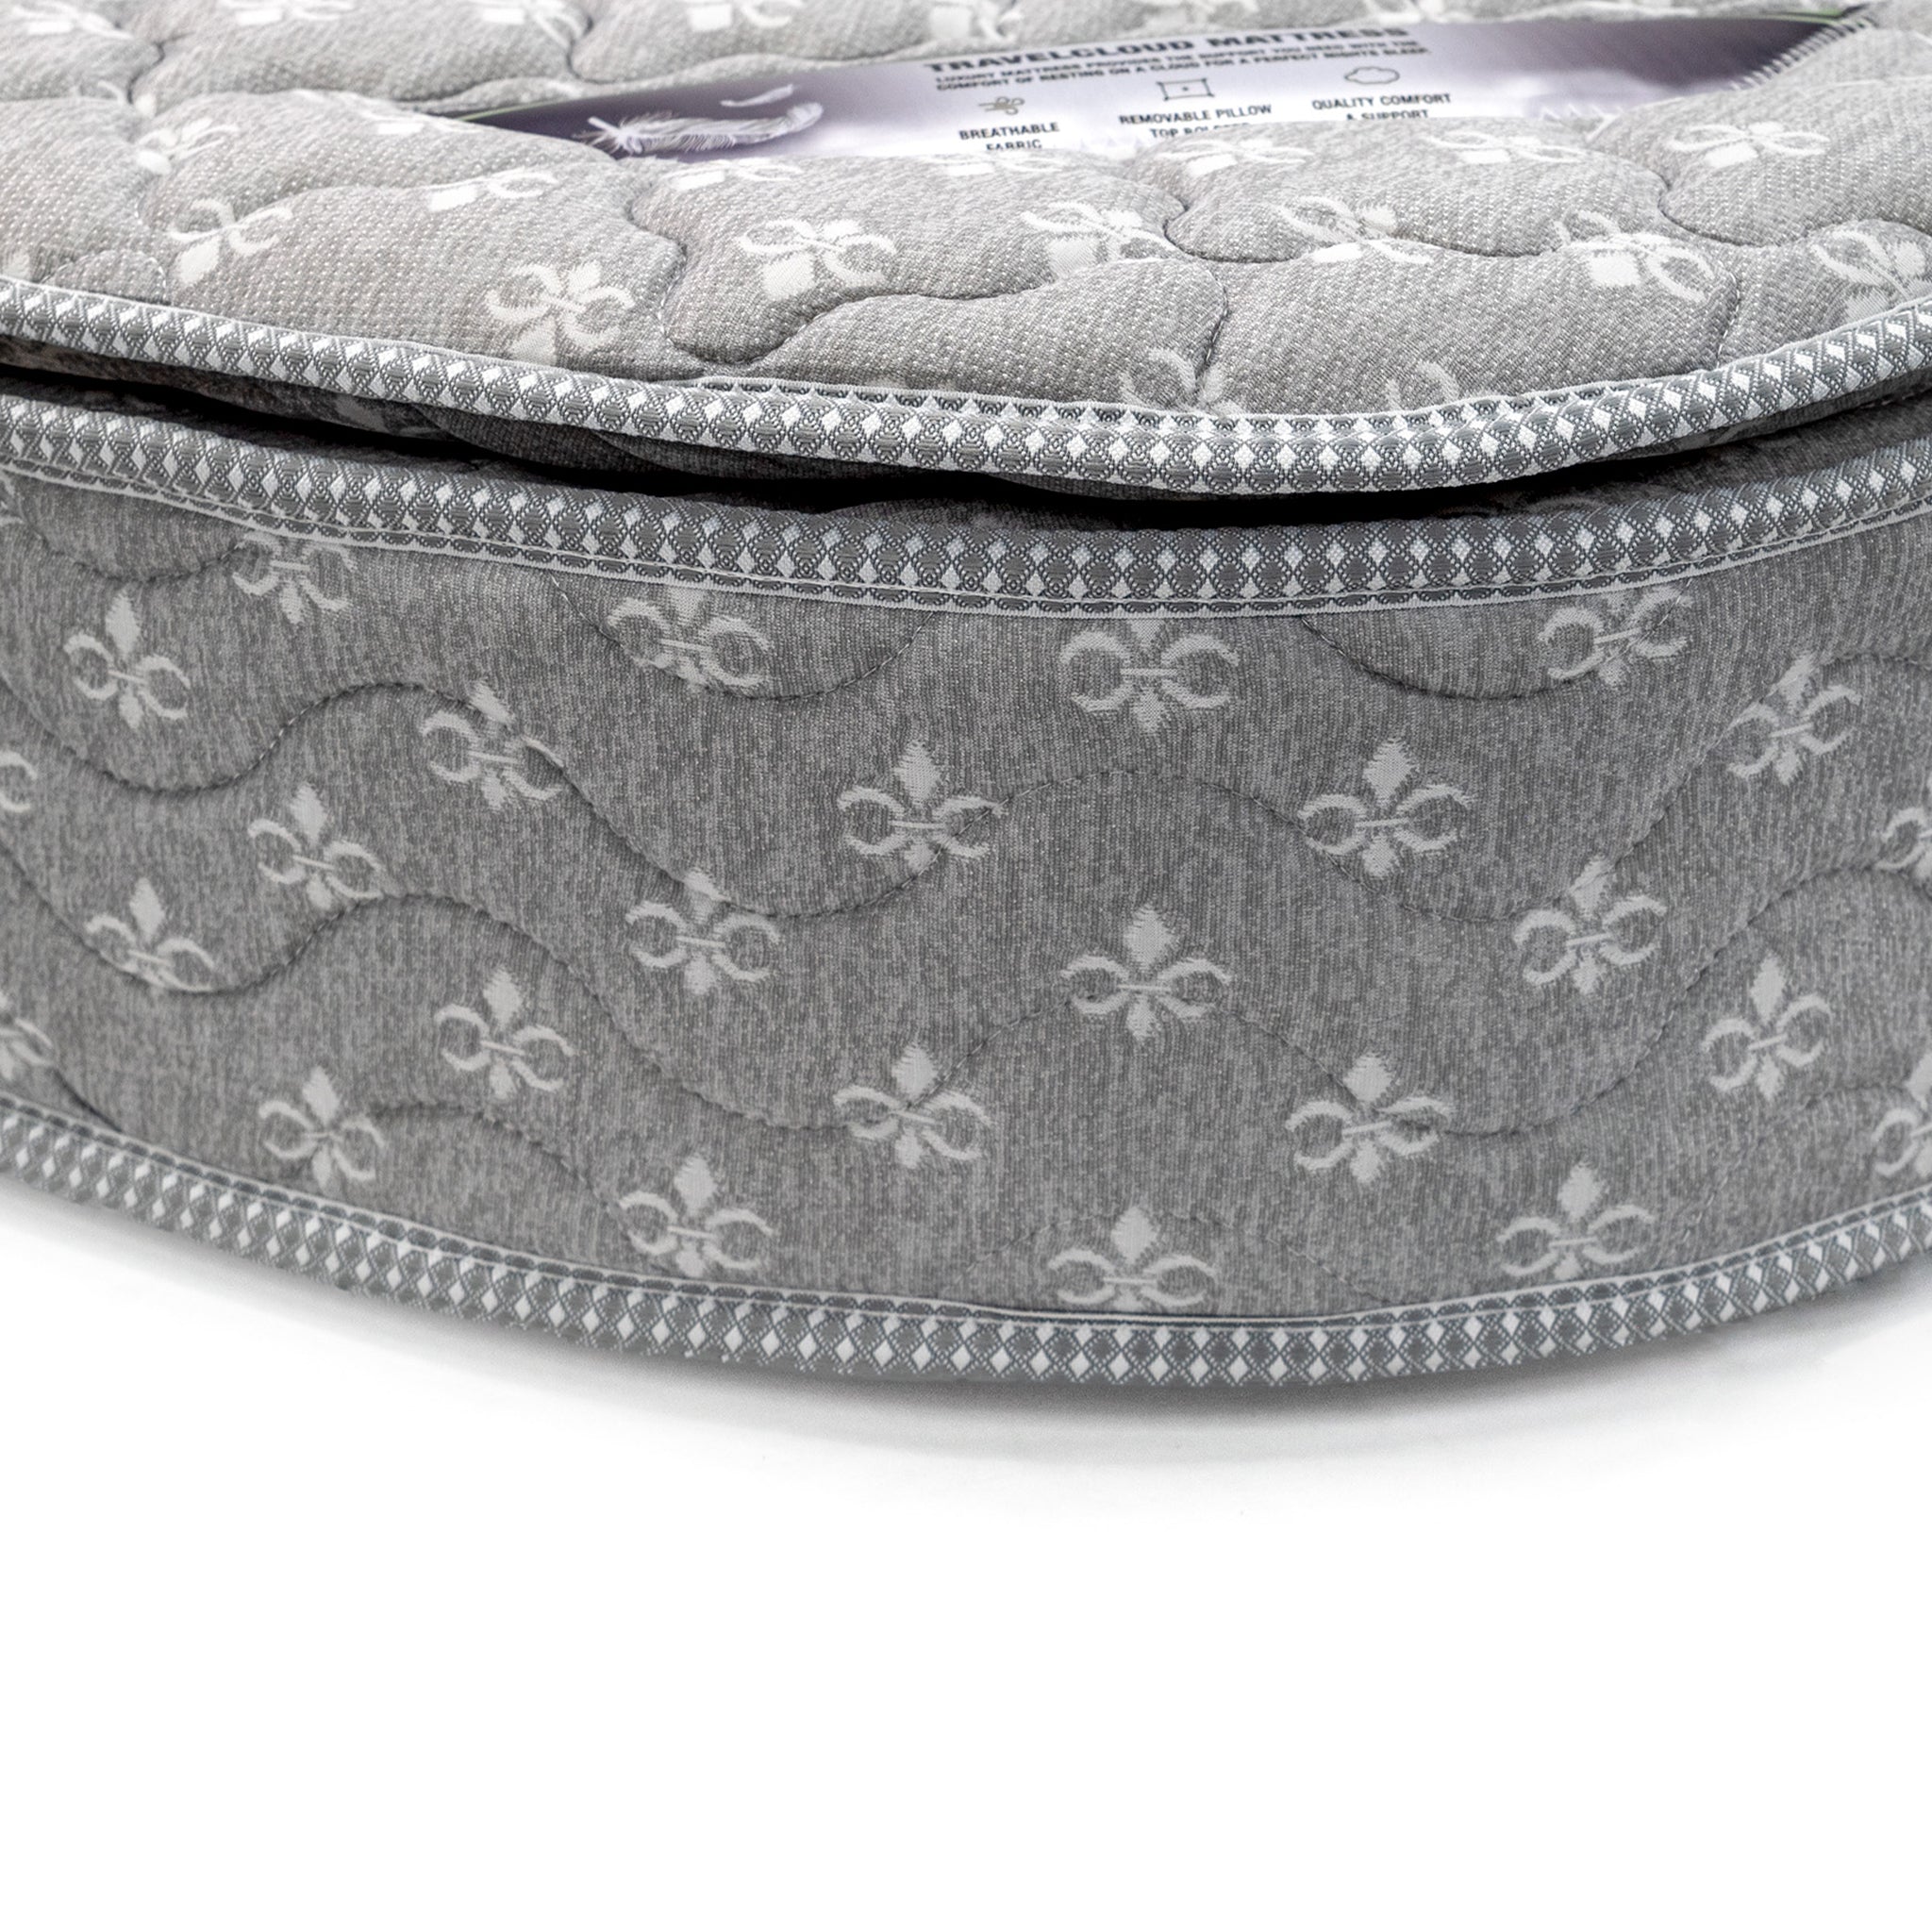 TravelCloud RV Queen Mattress - Pillow Top, No Bolster